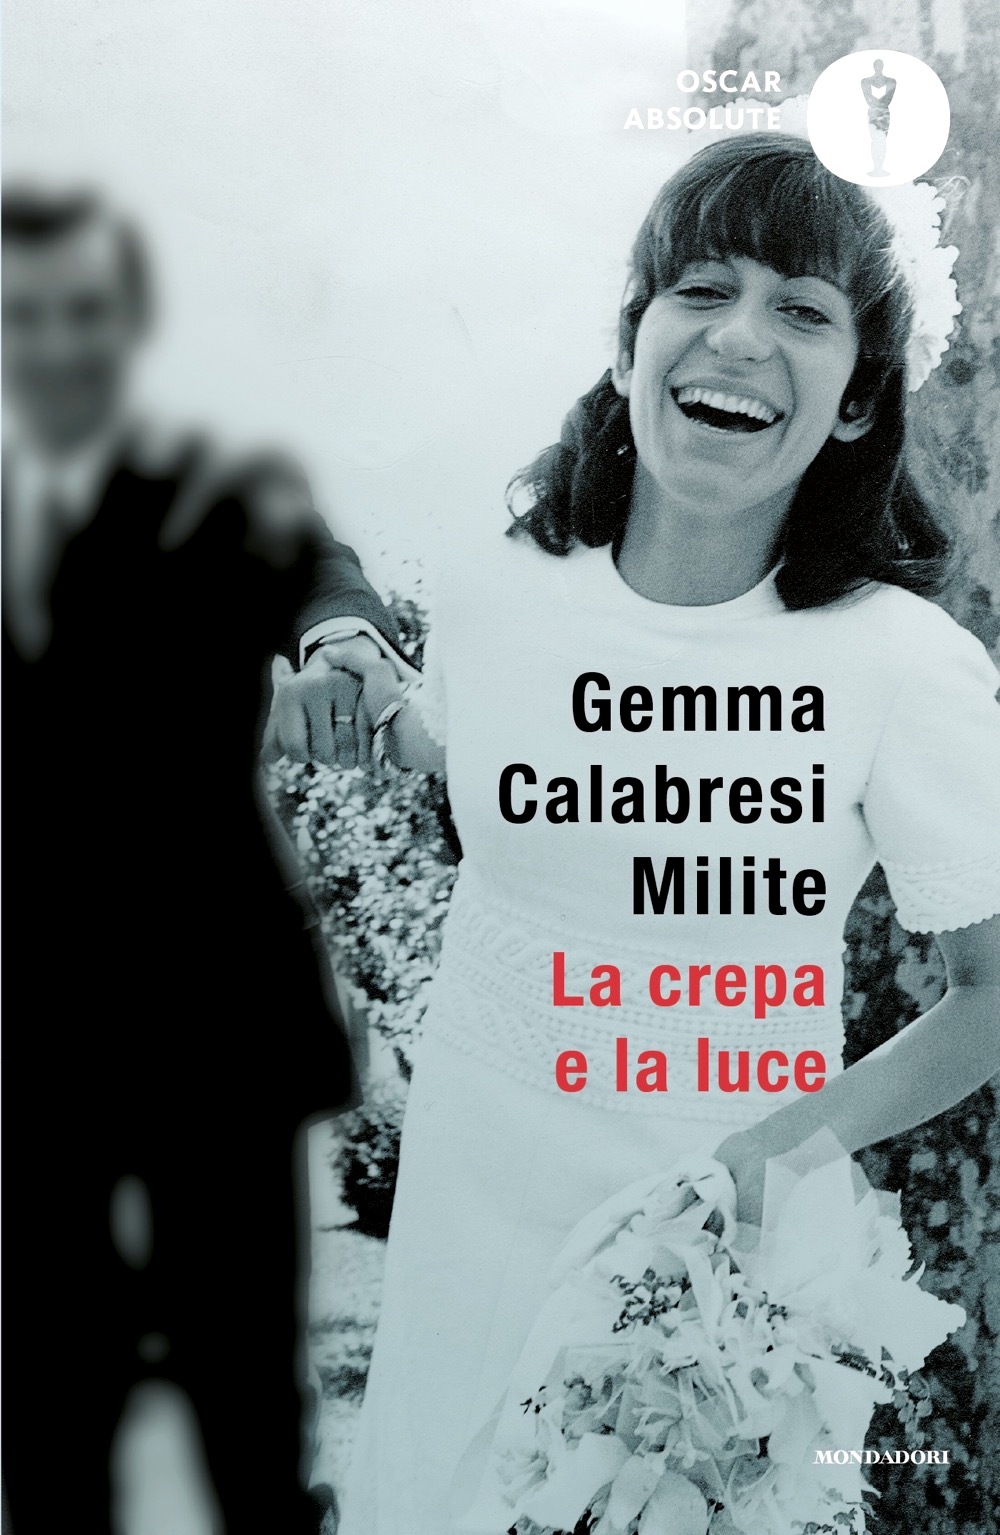 03 Gemma Calabresi La crepa e la luce